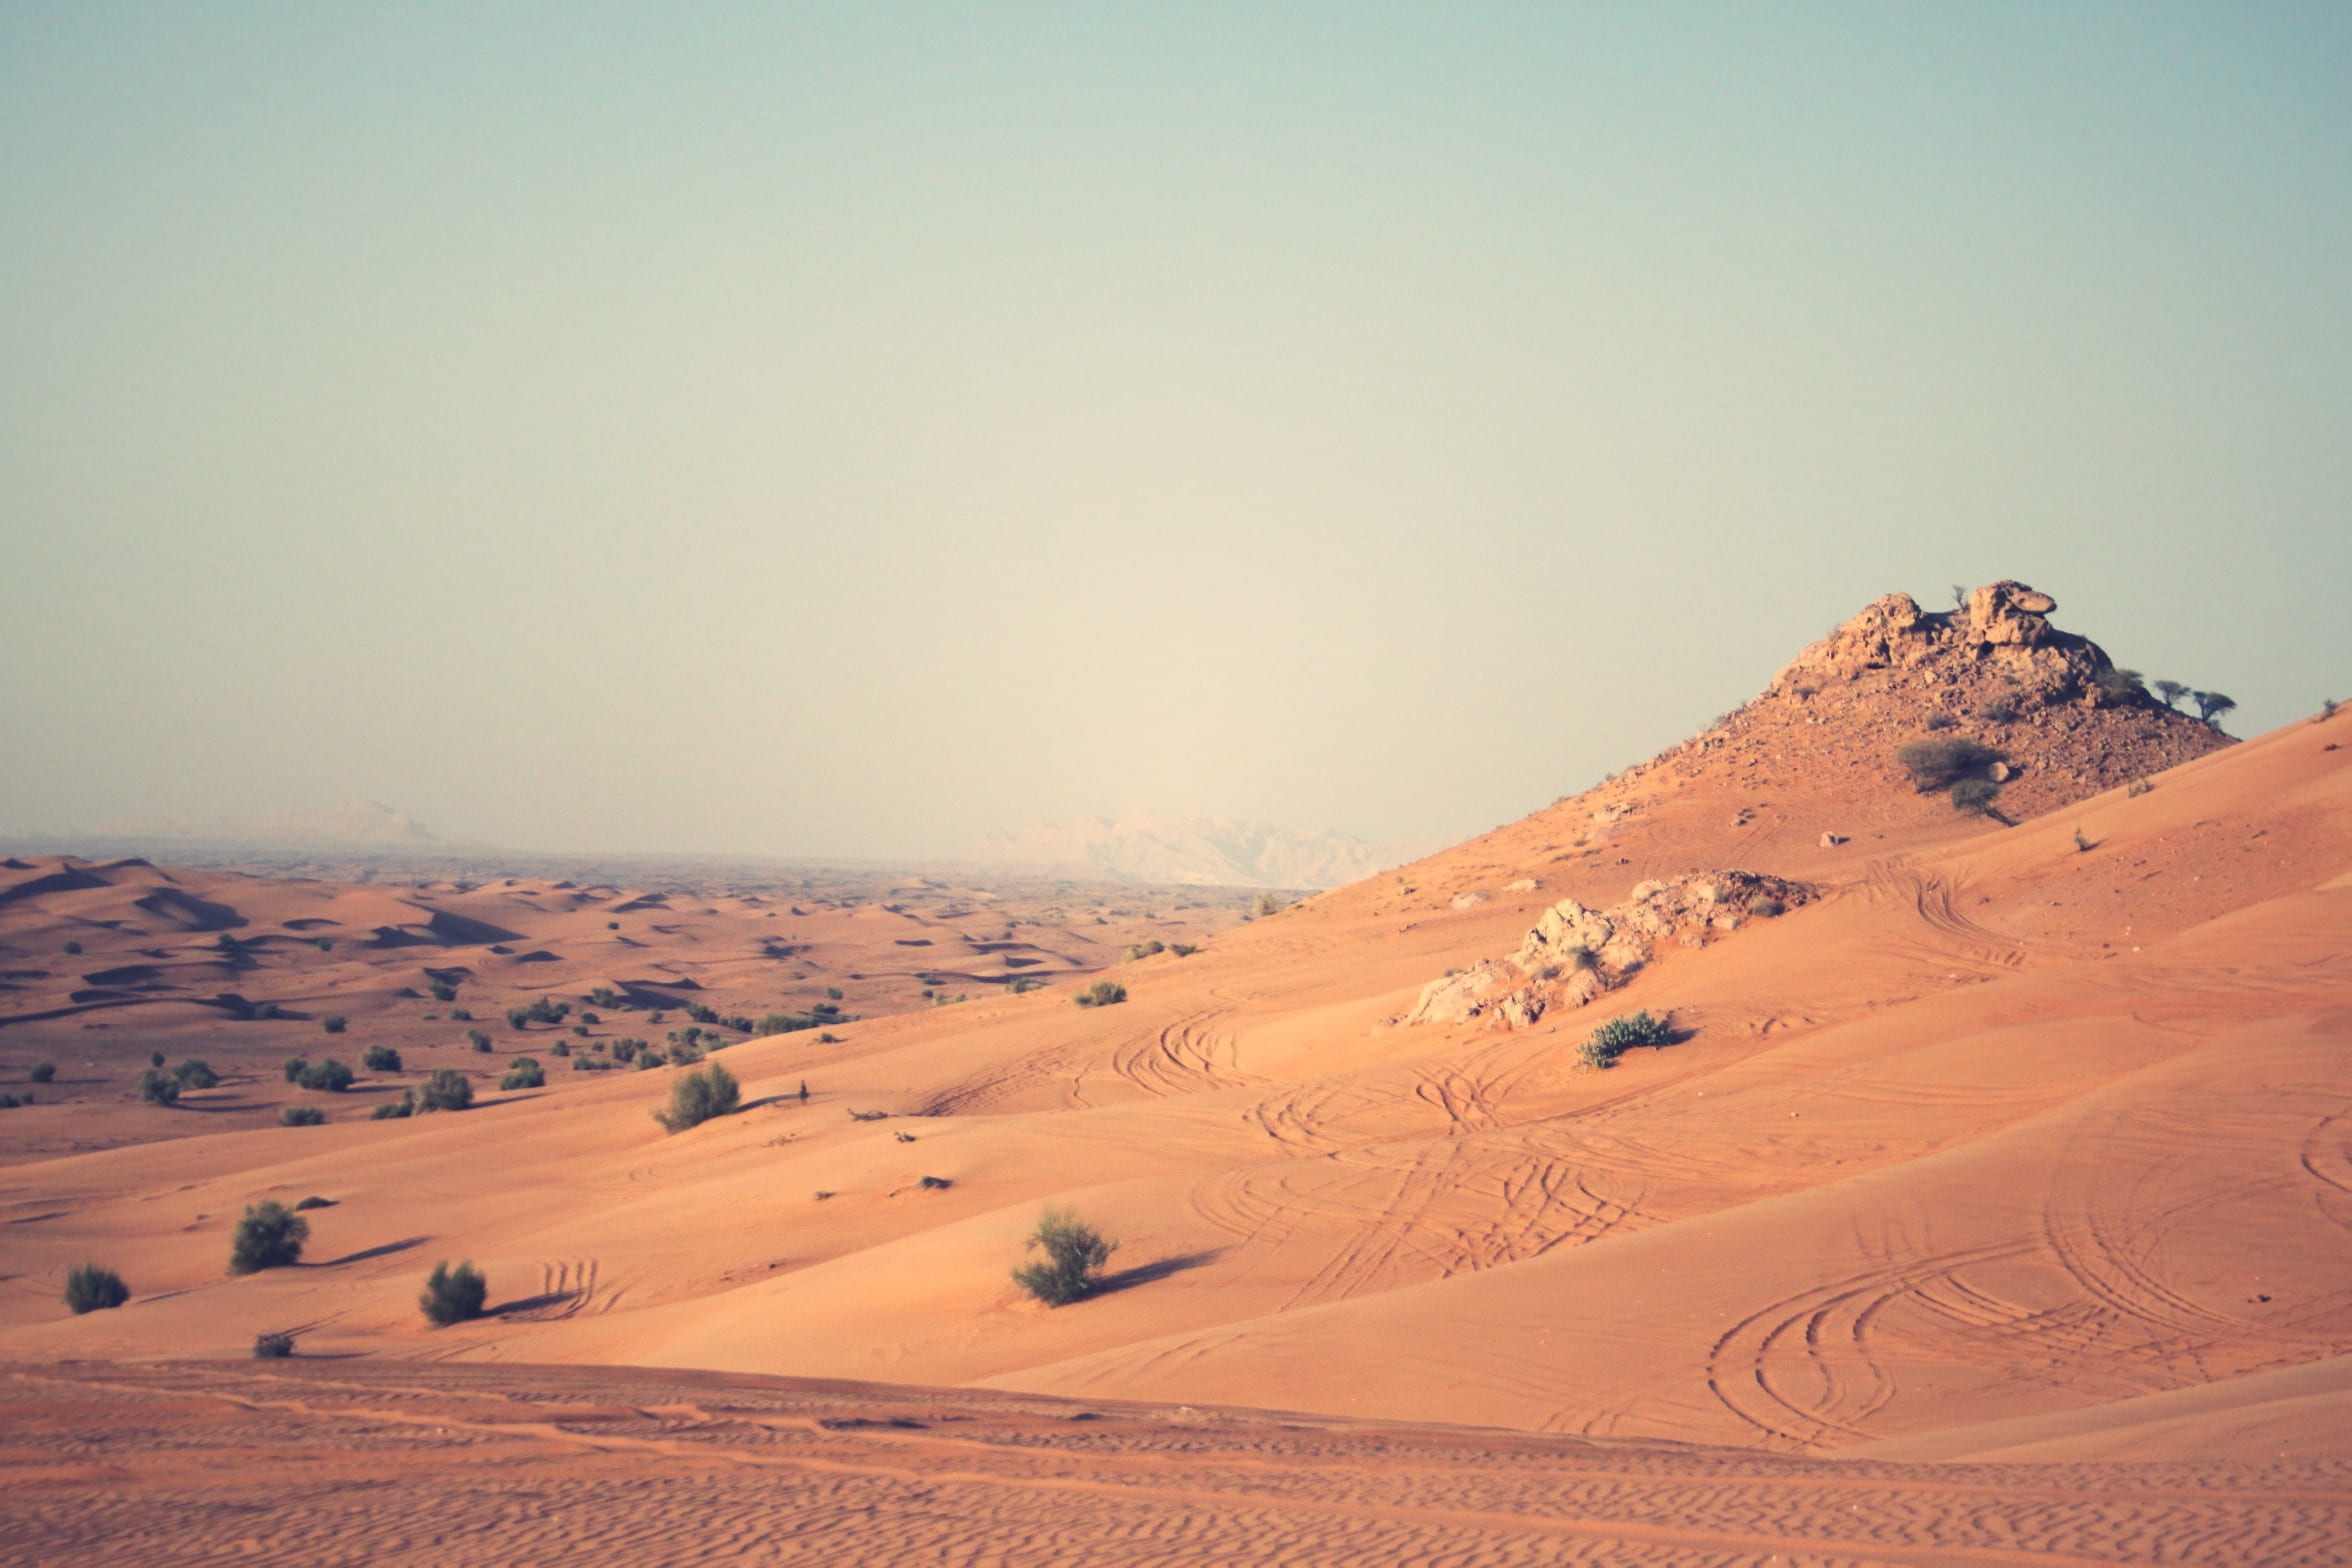 Dubai Desert, desert place under grey sky, sand dunes, dune bashing